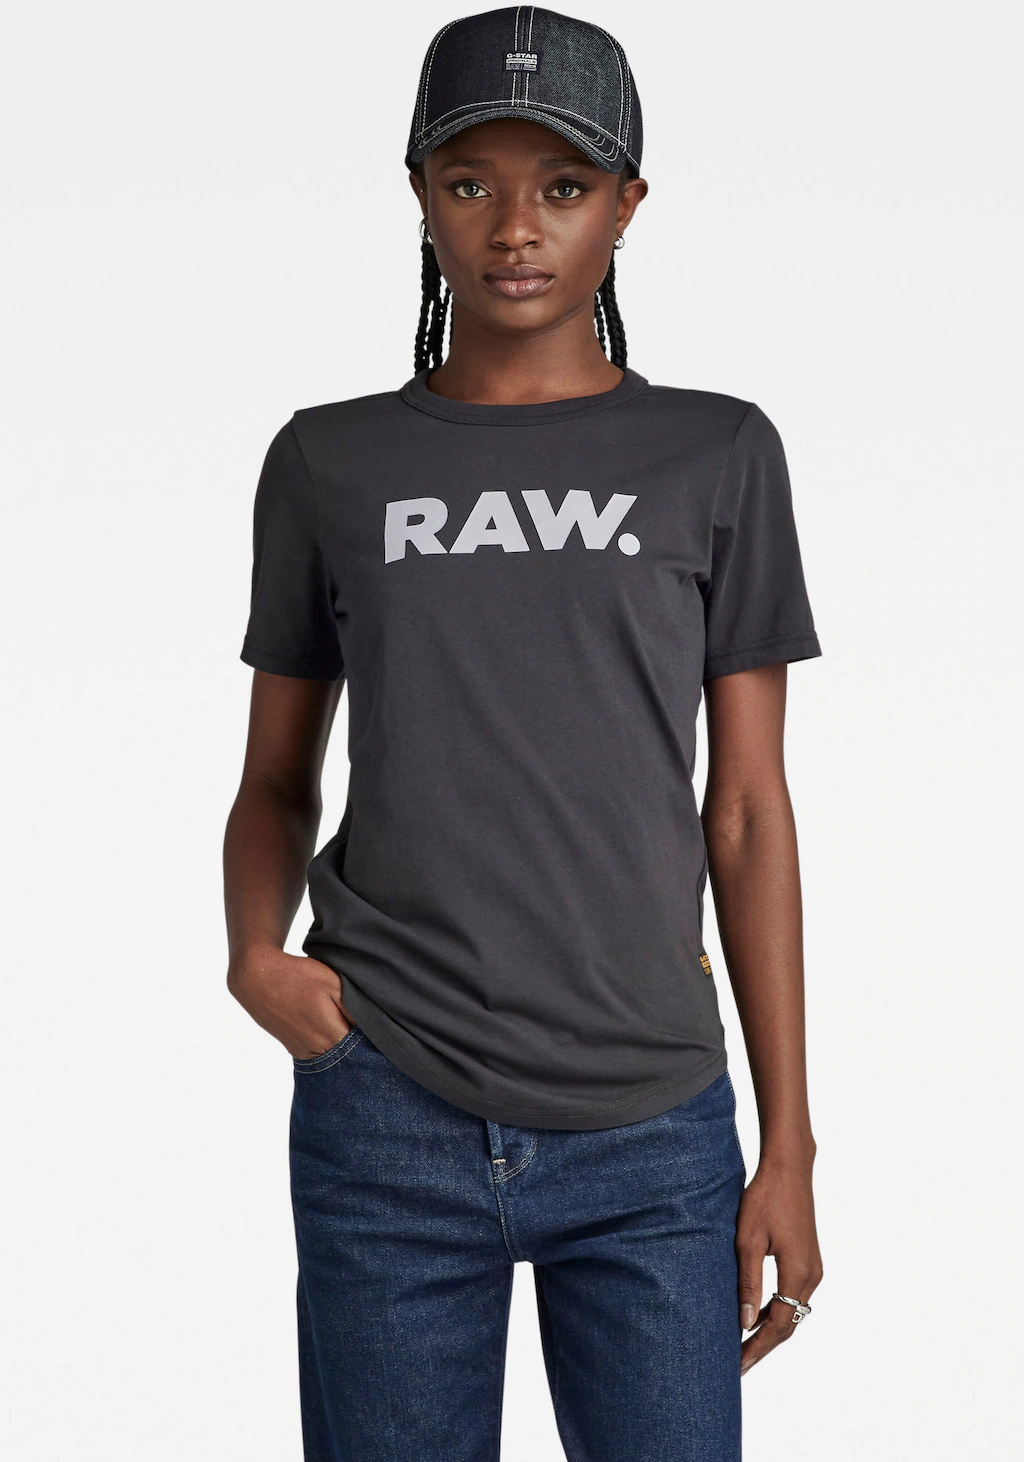 G-Star RAW T-Shirt "RAW. slim r t wmn" günstig online kaufen